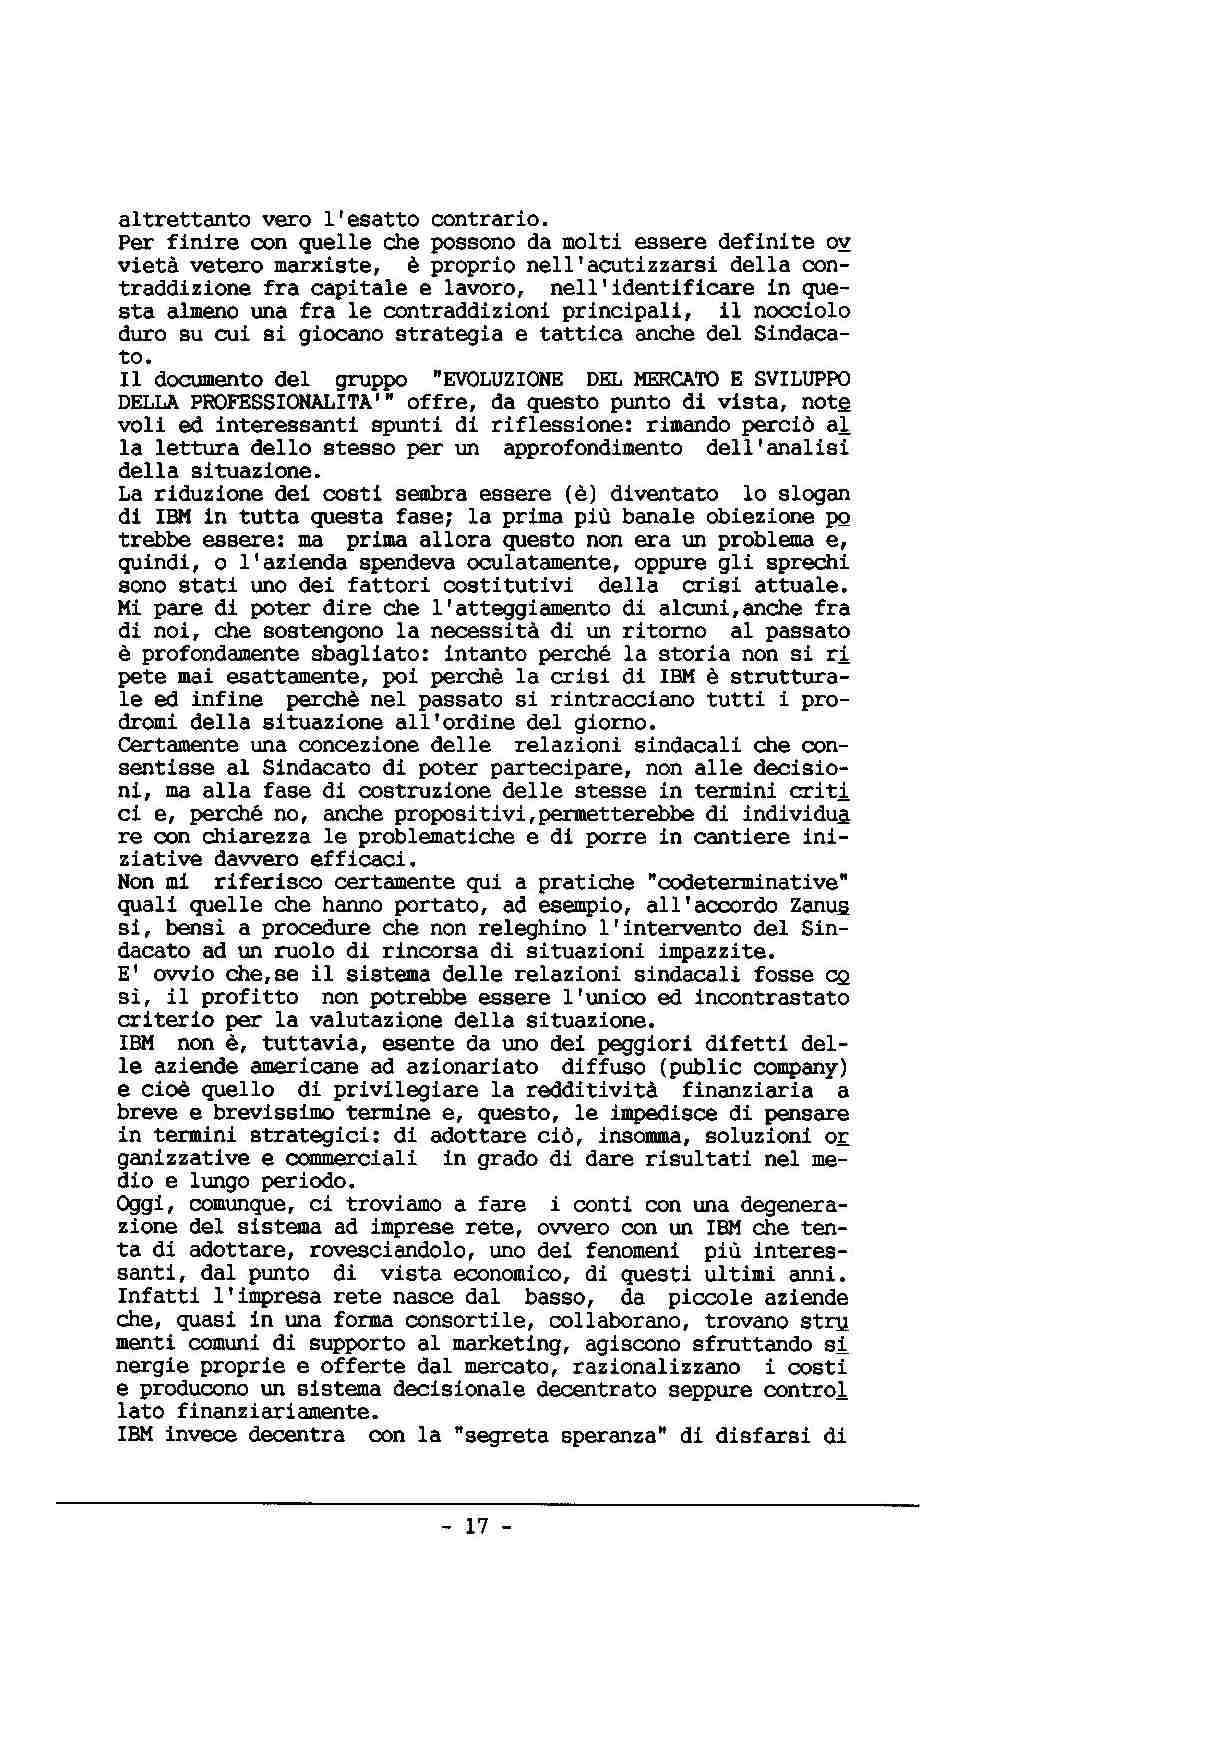 Contributo alla discussione del Coordinamento Nazionale
IBM SEMEA SpA sulla situazione attuale, a cura di A. Riboni - p. 17